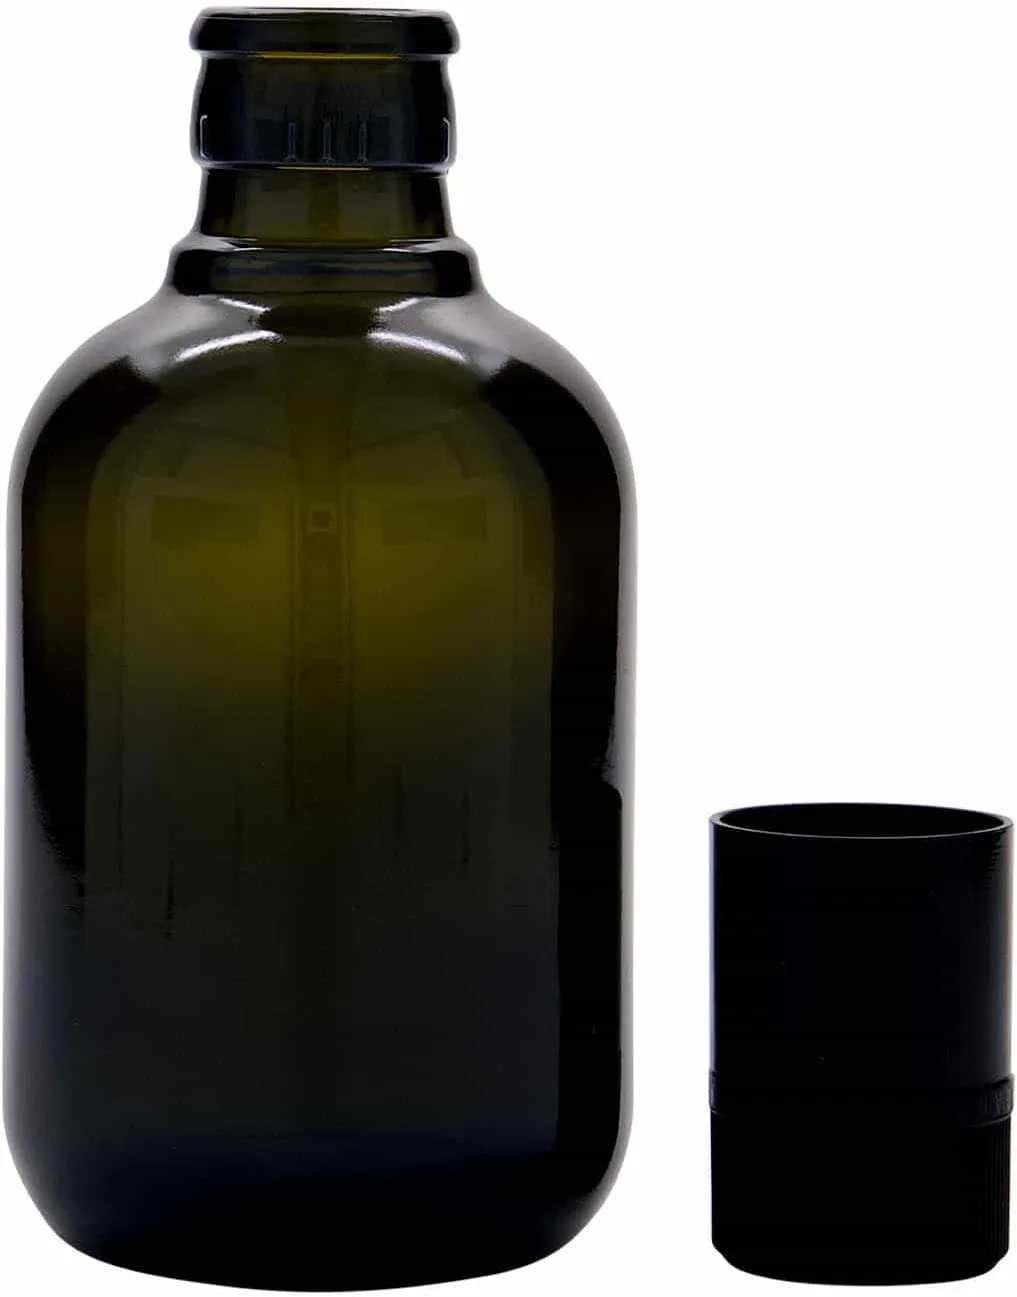 250 ml Bottiglia olio/aceto 'Biolio', vetro, verde antico, imboccatura: DOP